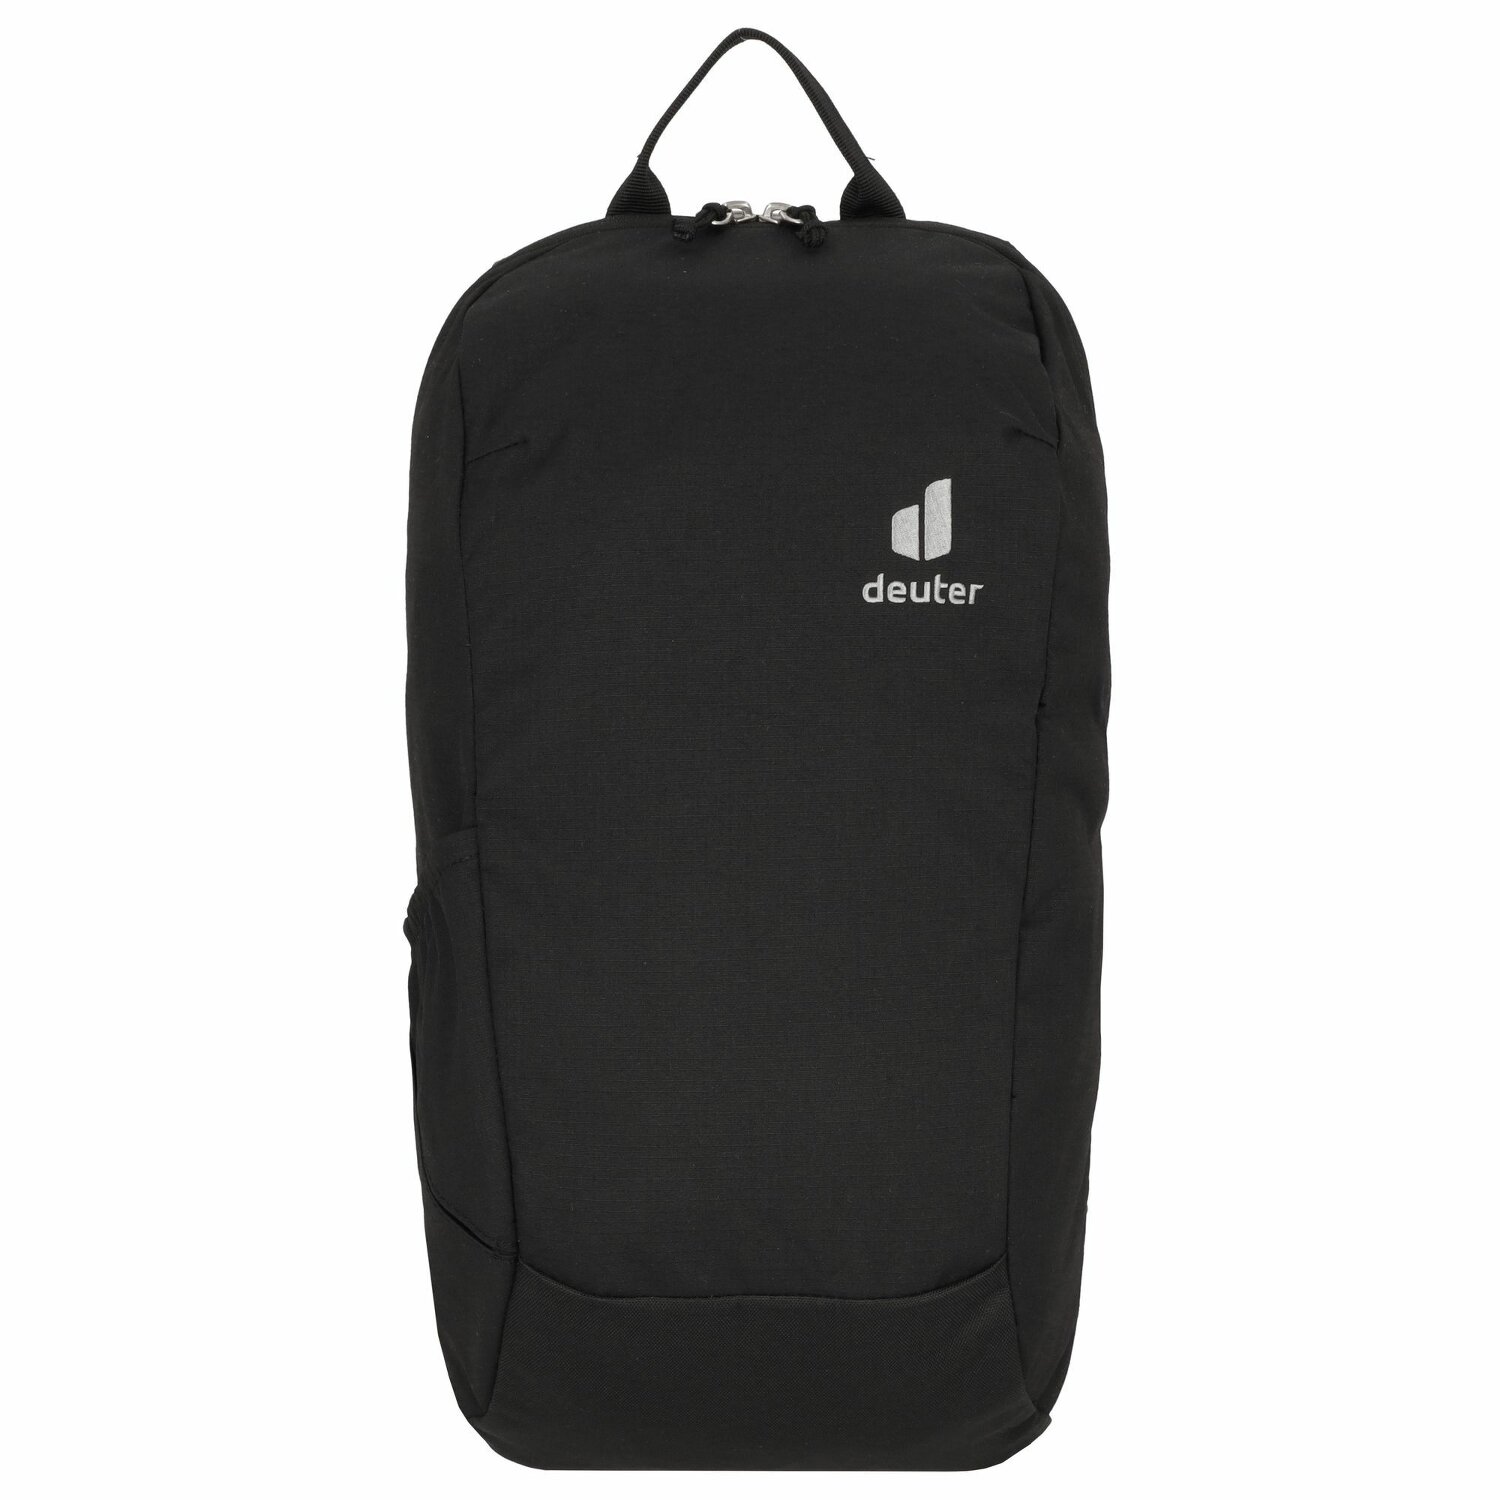 Deuter Stepout 12 Rucksack 45 cm Laptopfach black | Sporttaschen